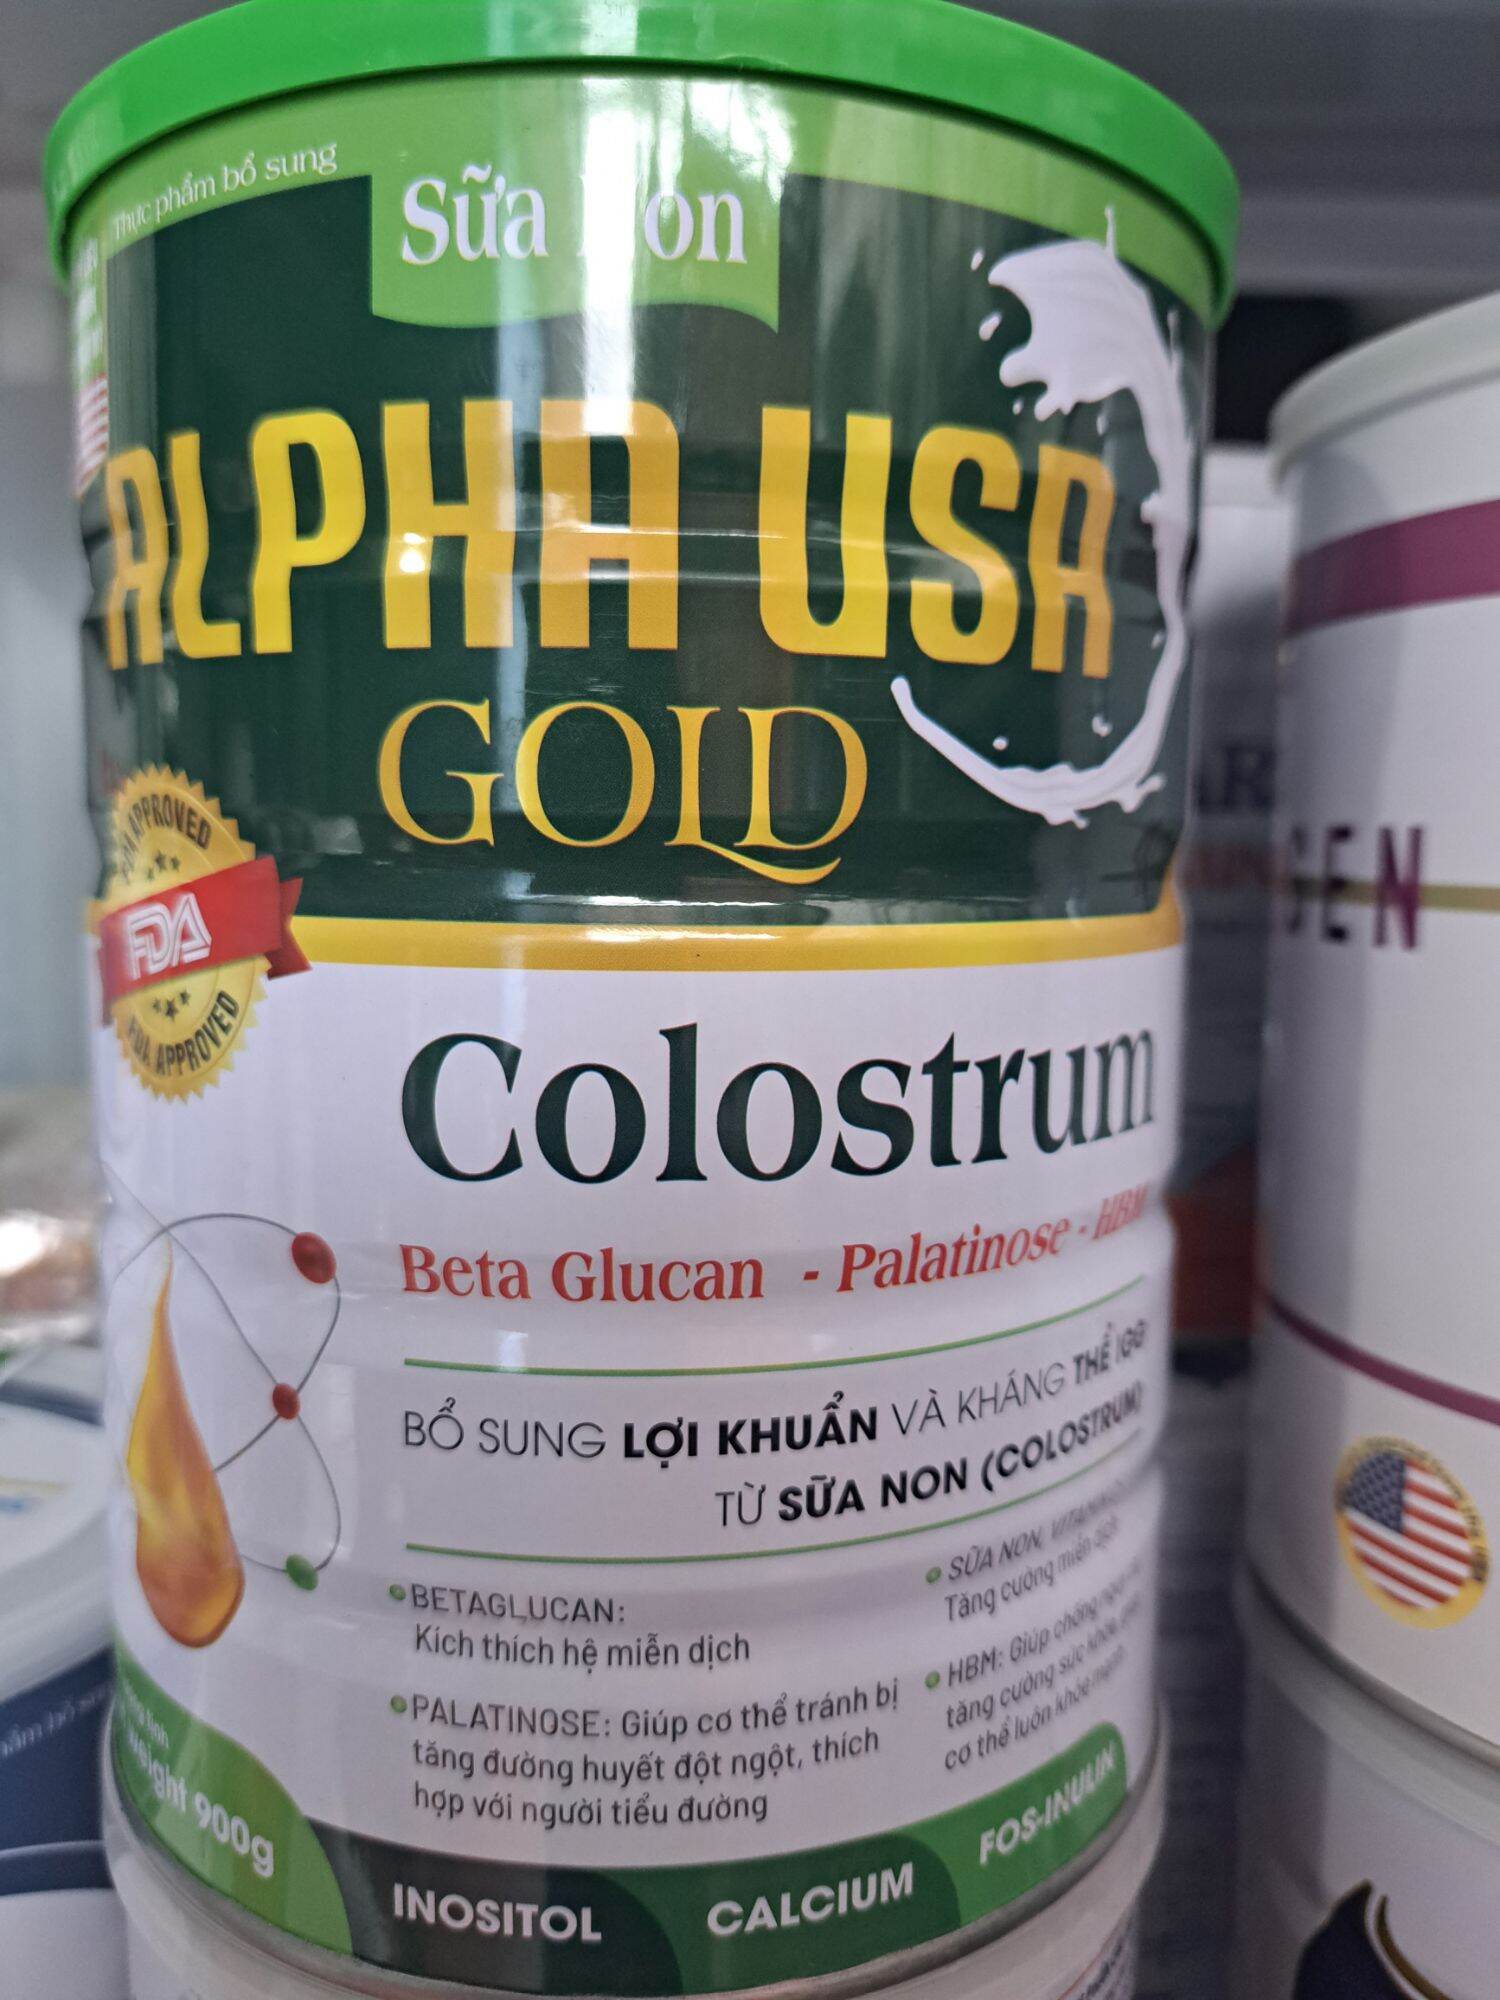 Sưa sữa non Alpha USA Gold colostrom tăng cường sức đề kháng bổ sung Lợi khuẩn và kháng thể IGGtừ sữa non